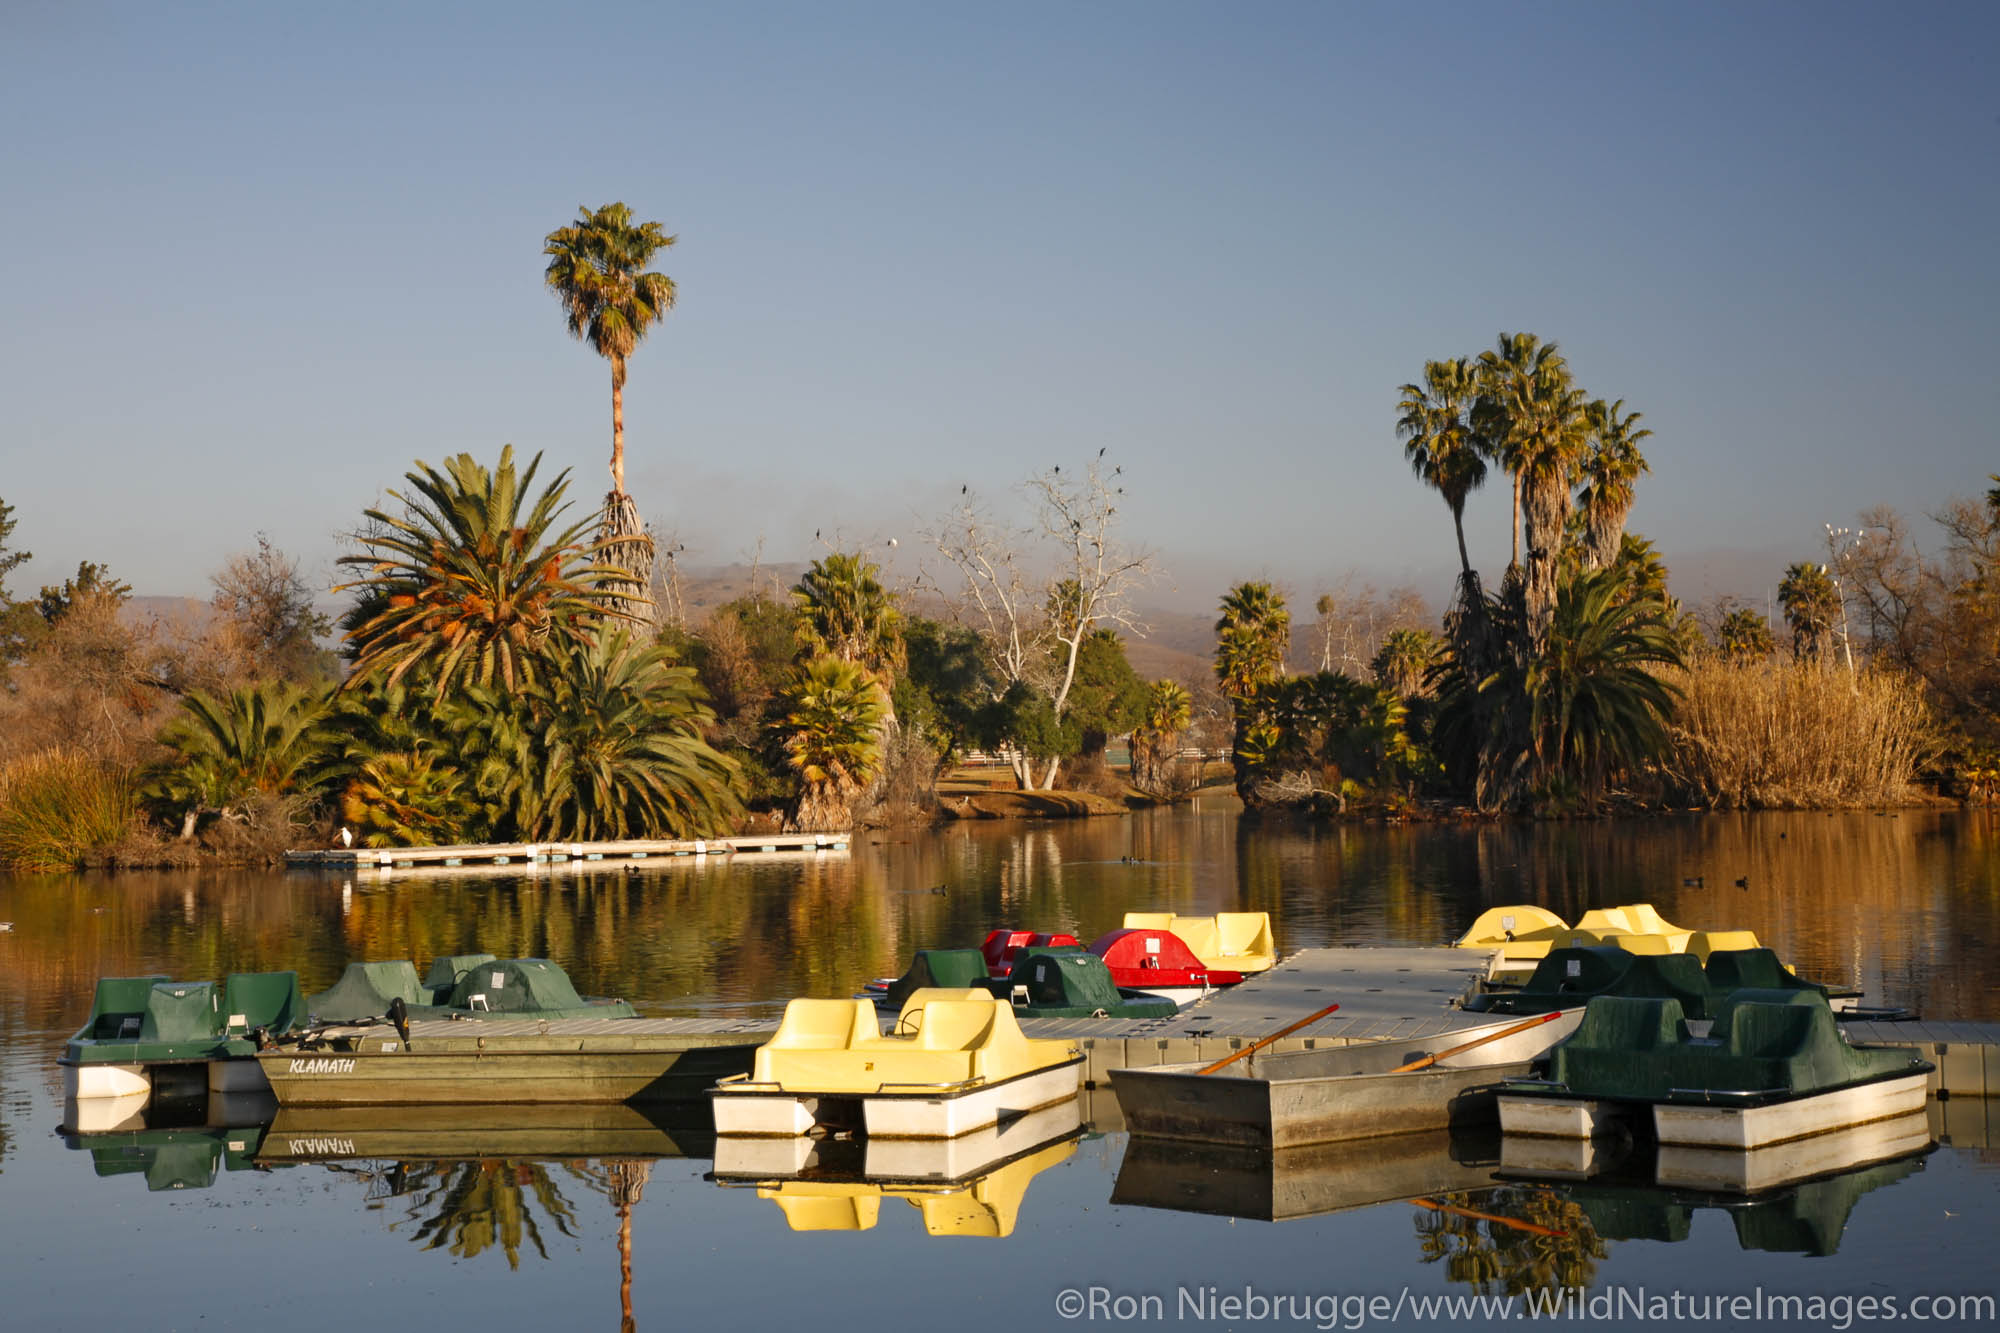 Pedal boats at Santee Lakes, Santee Lakes Recreation Preserve, Santee, California.